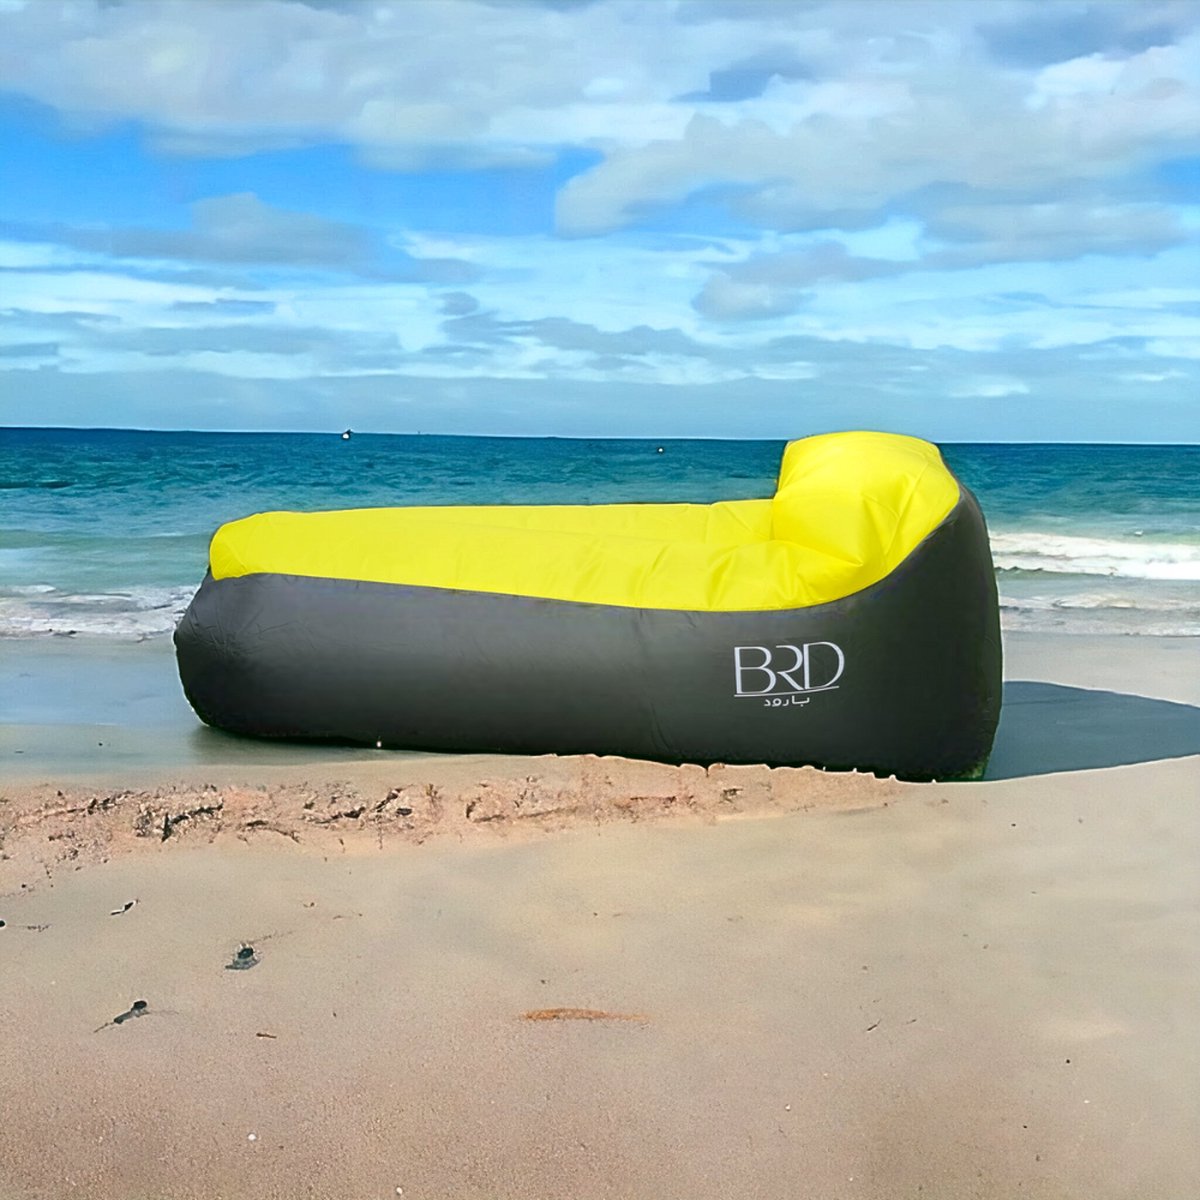 BRD Outdoor® | Geel Lounge Air Bed Lucht Zit Sofa | Kampeer Zitzak | Strand waterproof luchtzak | Waterbestendig | Camping stoel Kampeer sofa poef Ligstoel air lounger